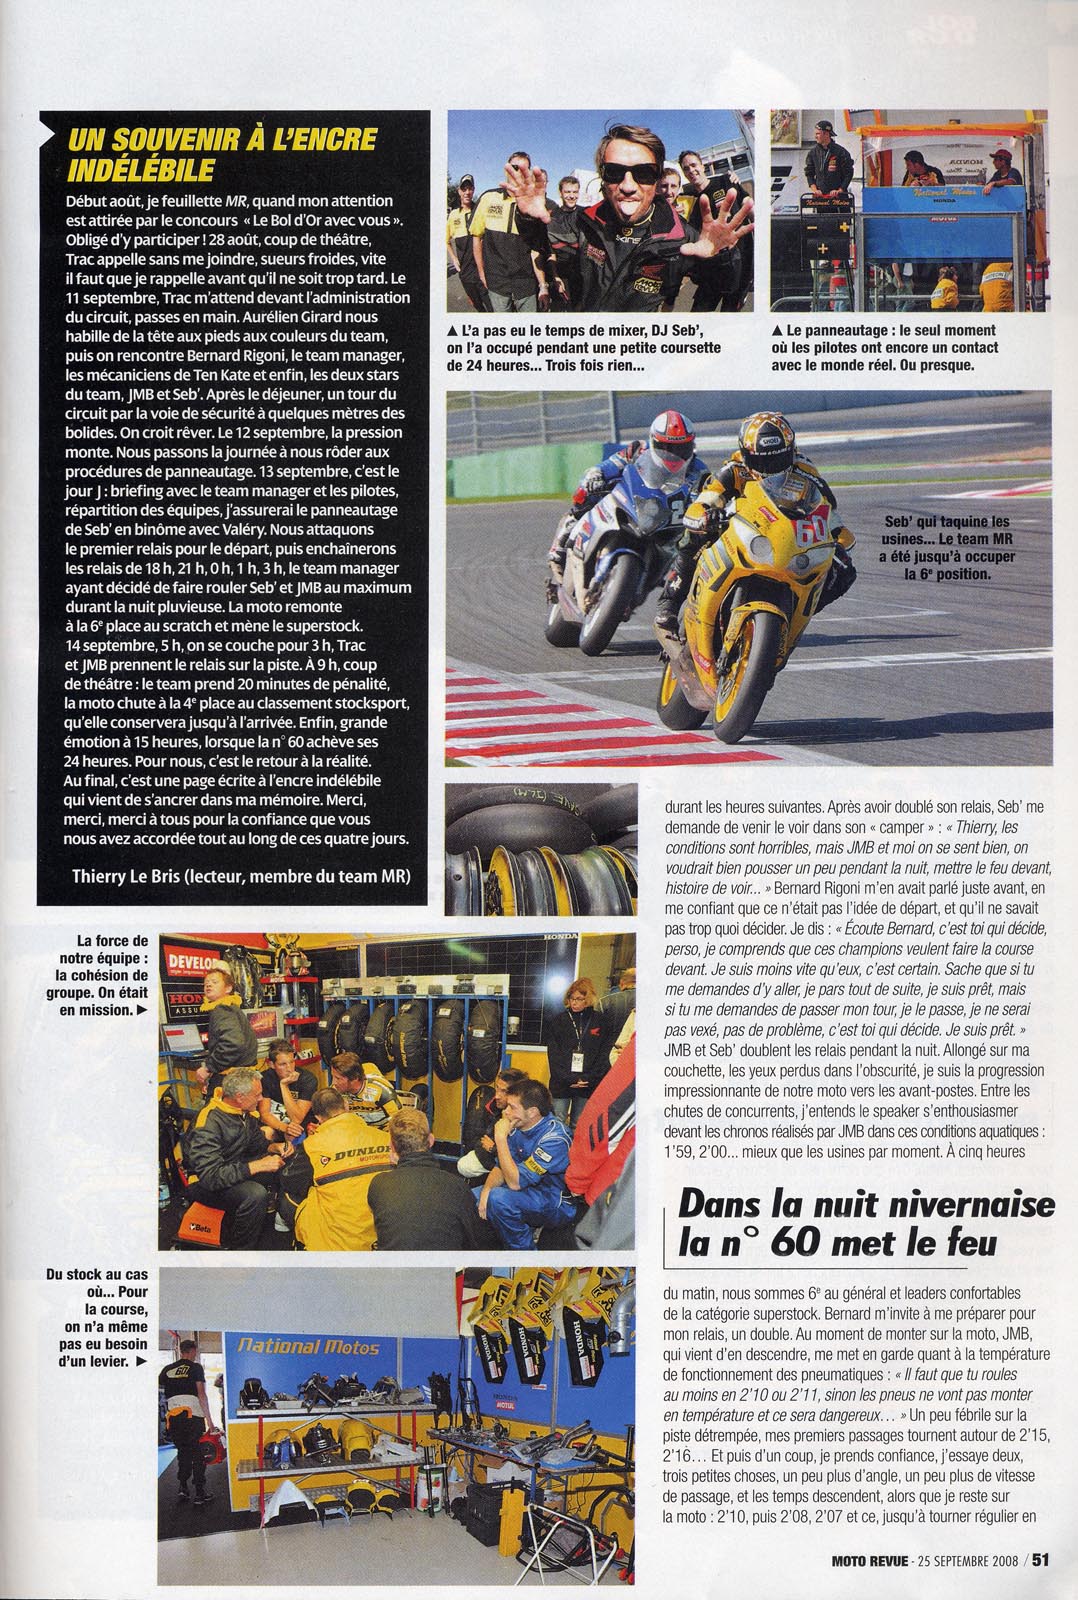 La page 51 du Moto Revue 3825 où on trouve un excellent papier de Thierry Traccan sur cette épreuve du Bol d'Or 2008